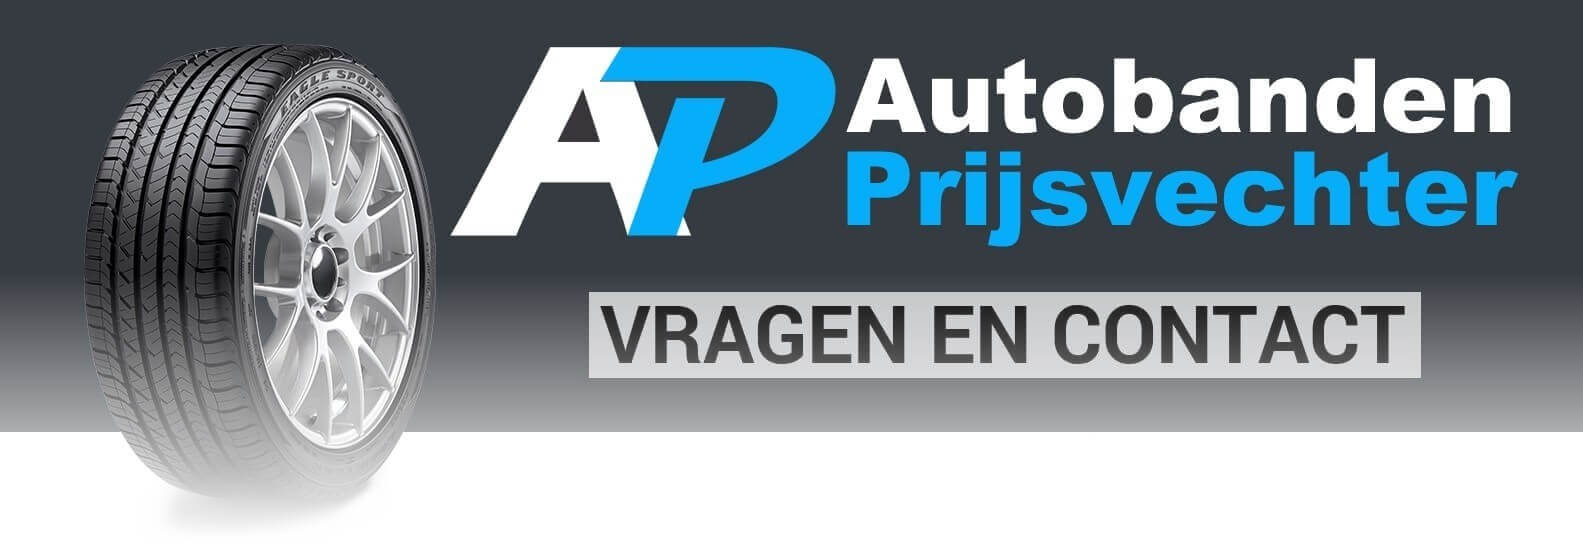 Contact Autobanden Prijsvechter